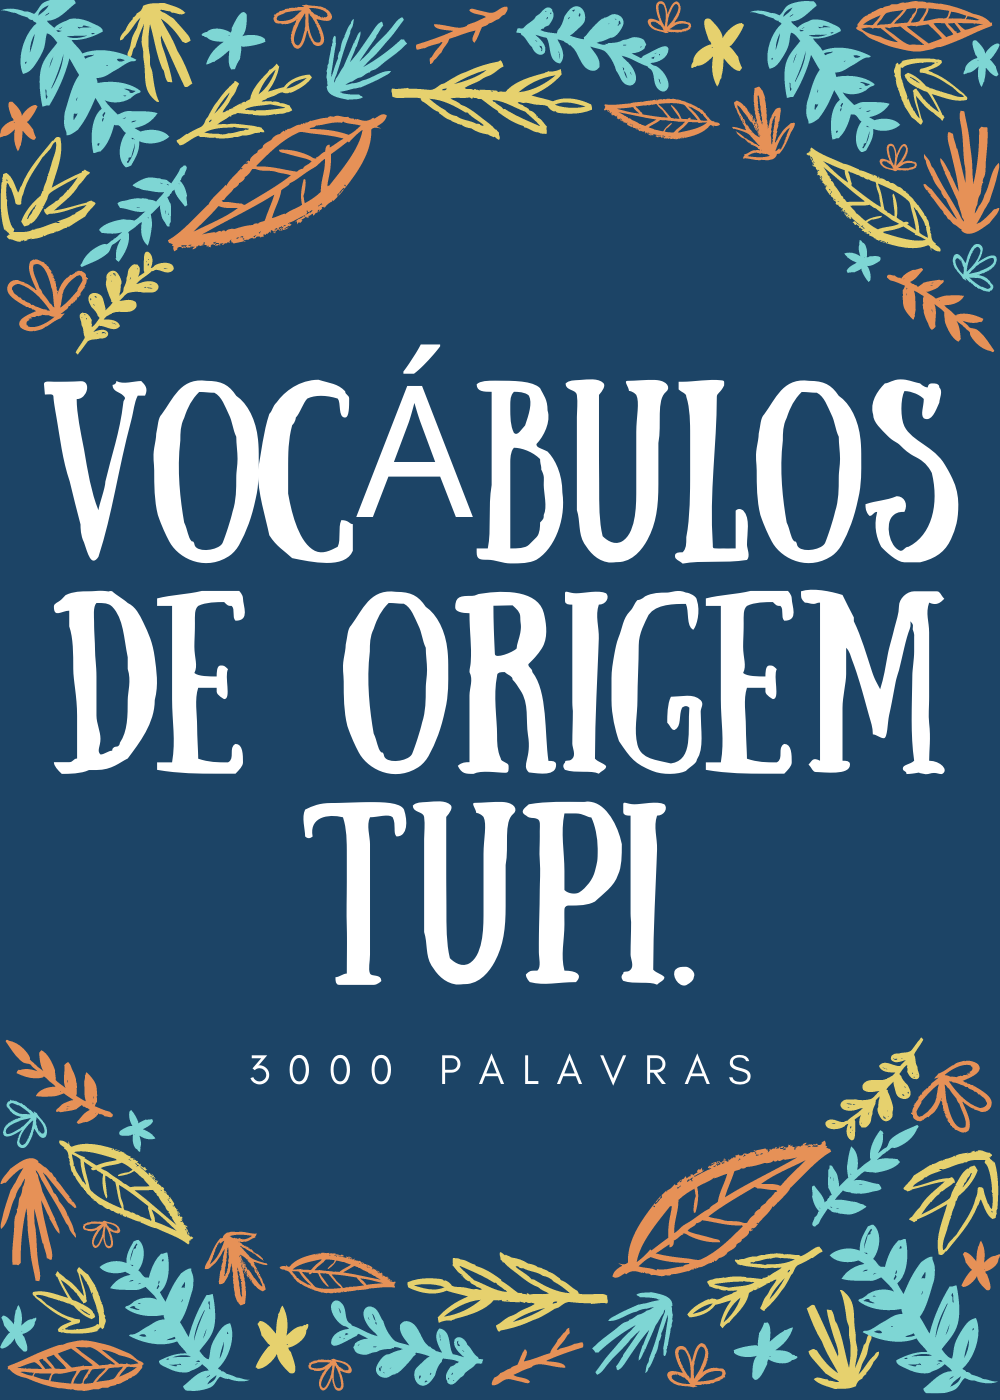 Vocabulário e Expressões idiomáticas do povo evangélico ⋆ Loja Uiclap